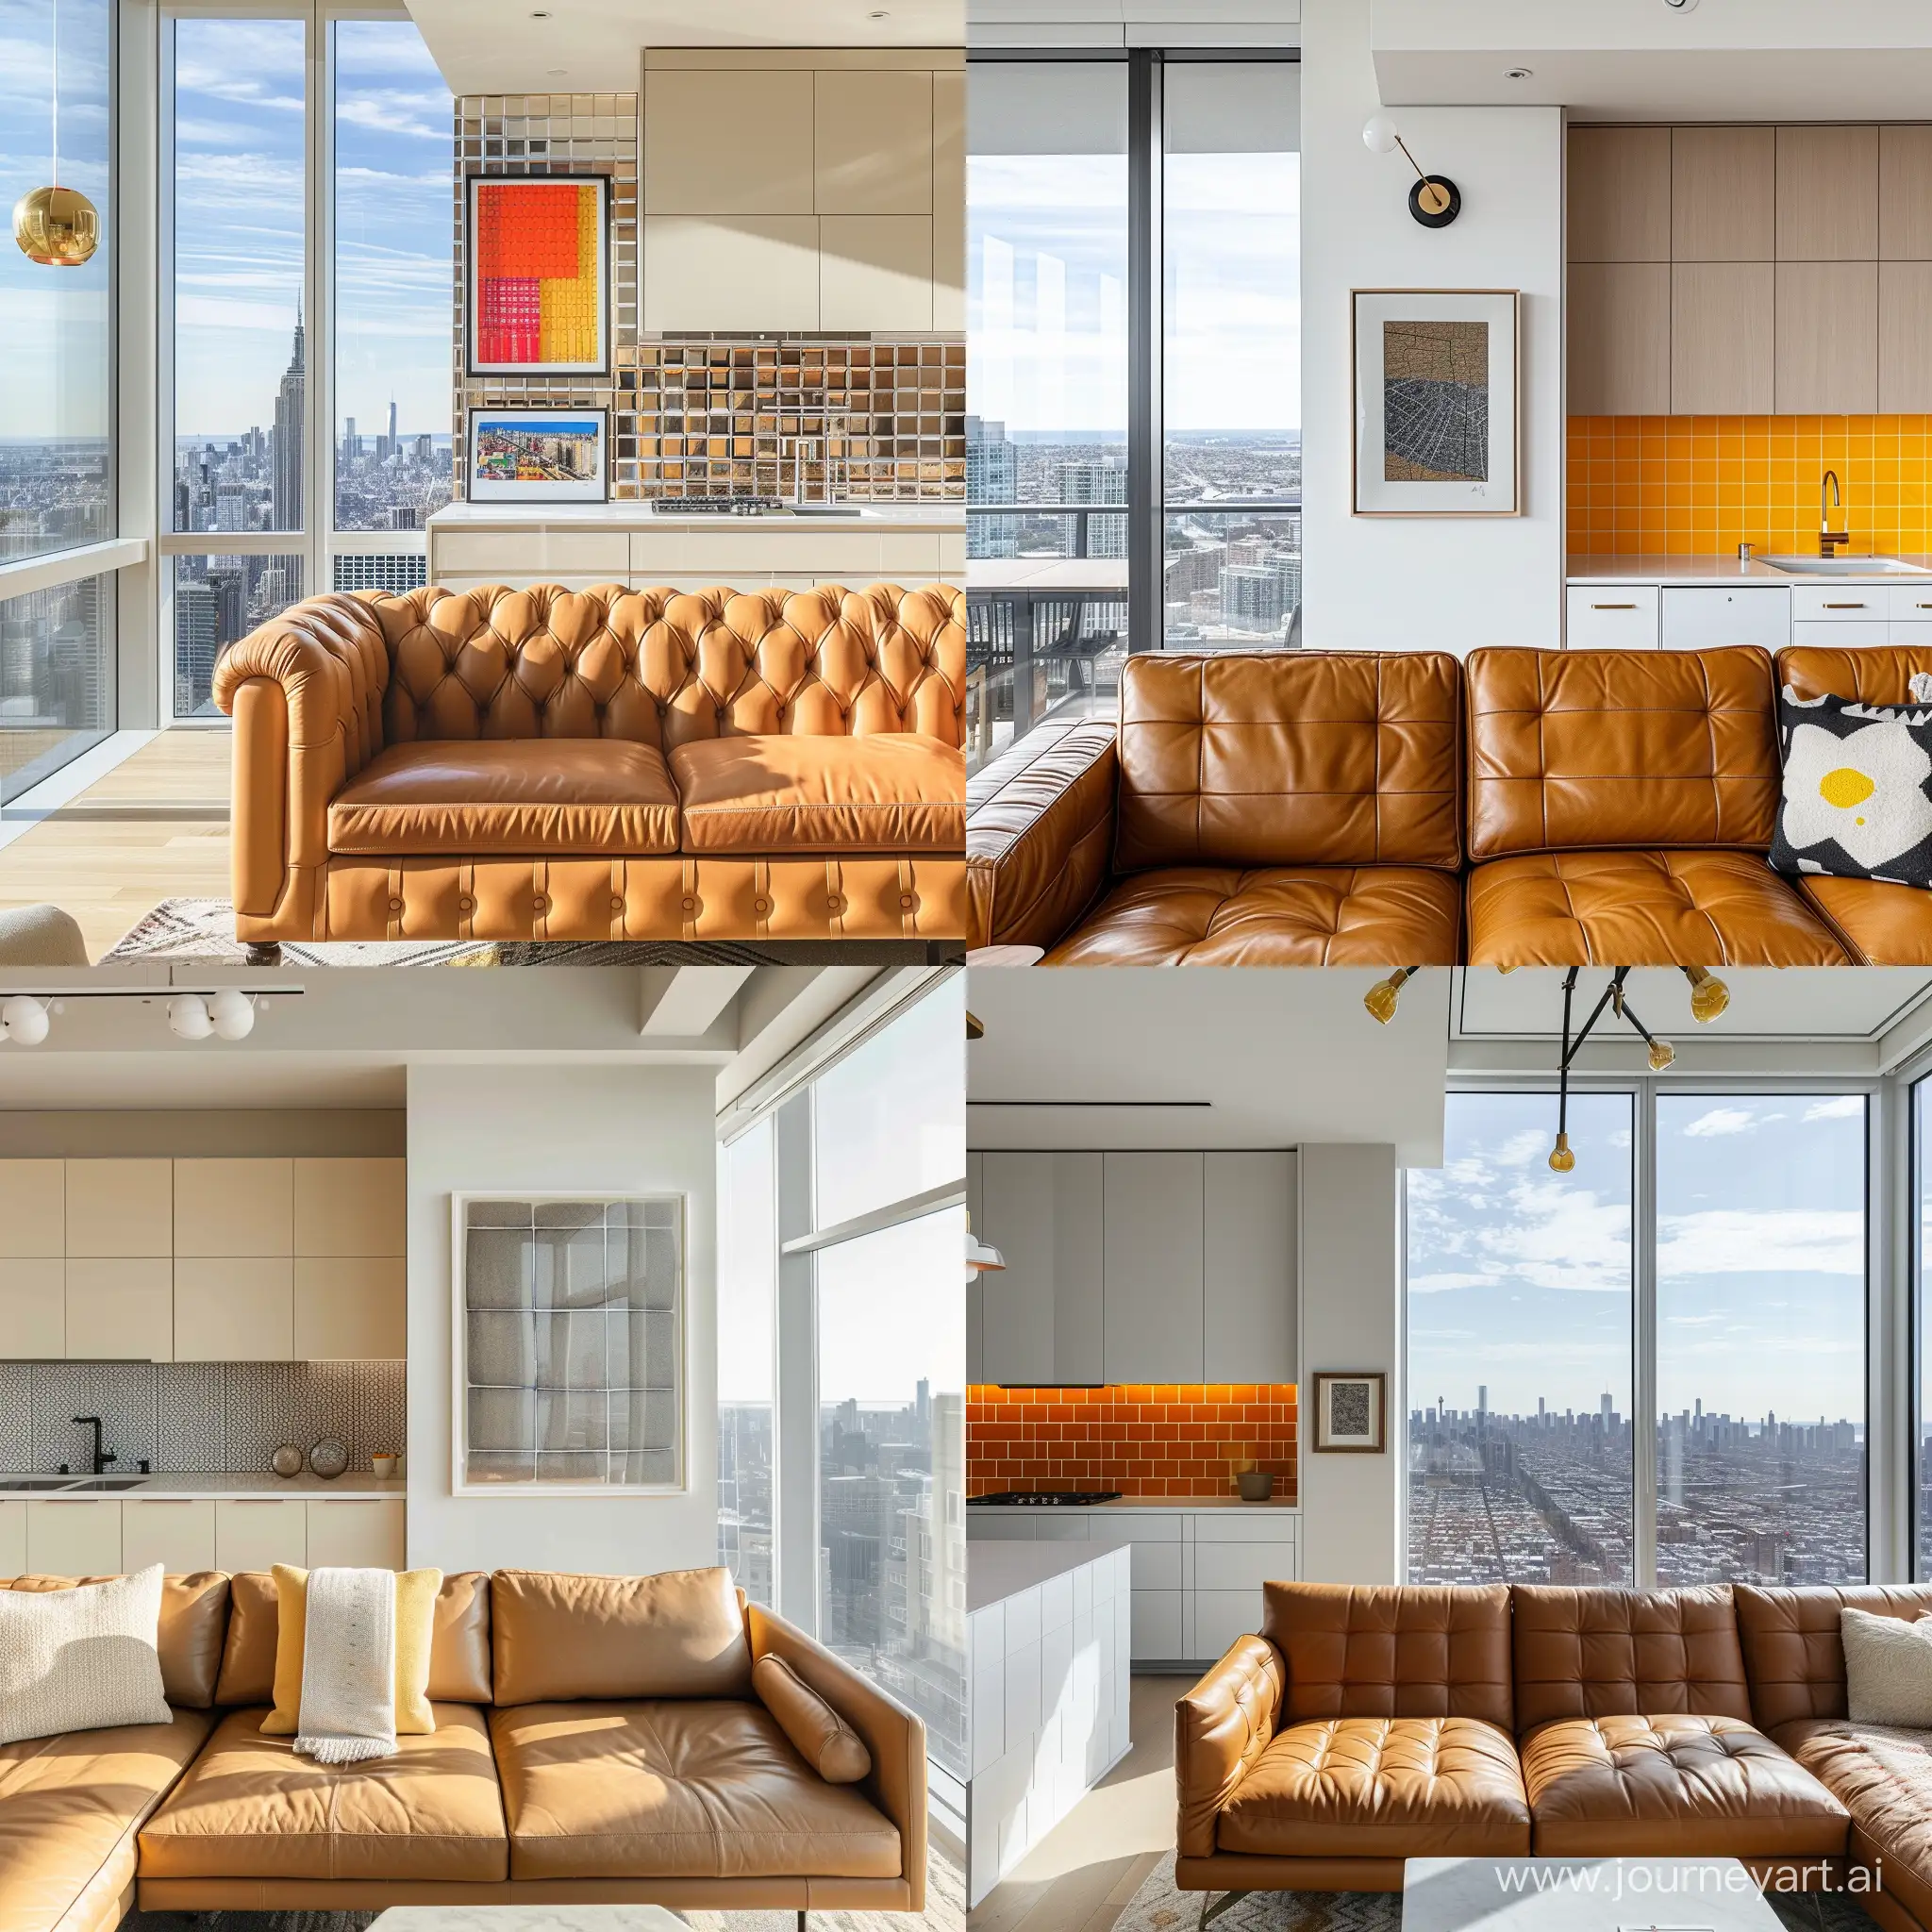 красивый современный интерьер, панорамные окна, вид с 85 этажа,  кожанный диван, текстиль, кухня светлая с ярким фартуком, принты